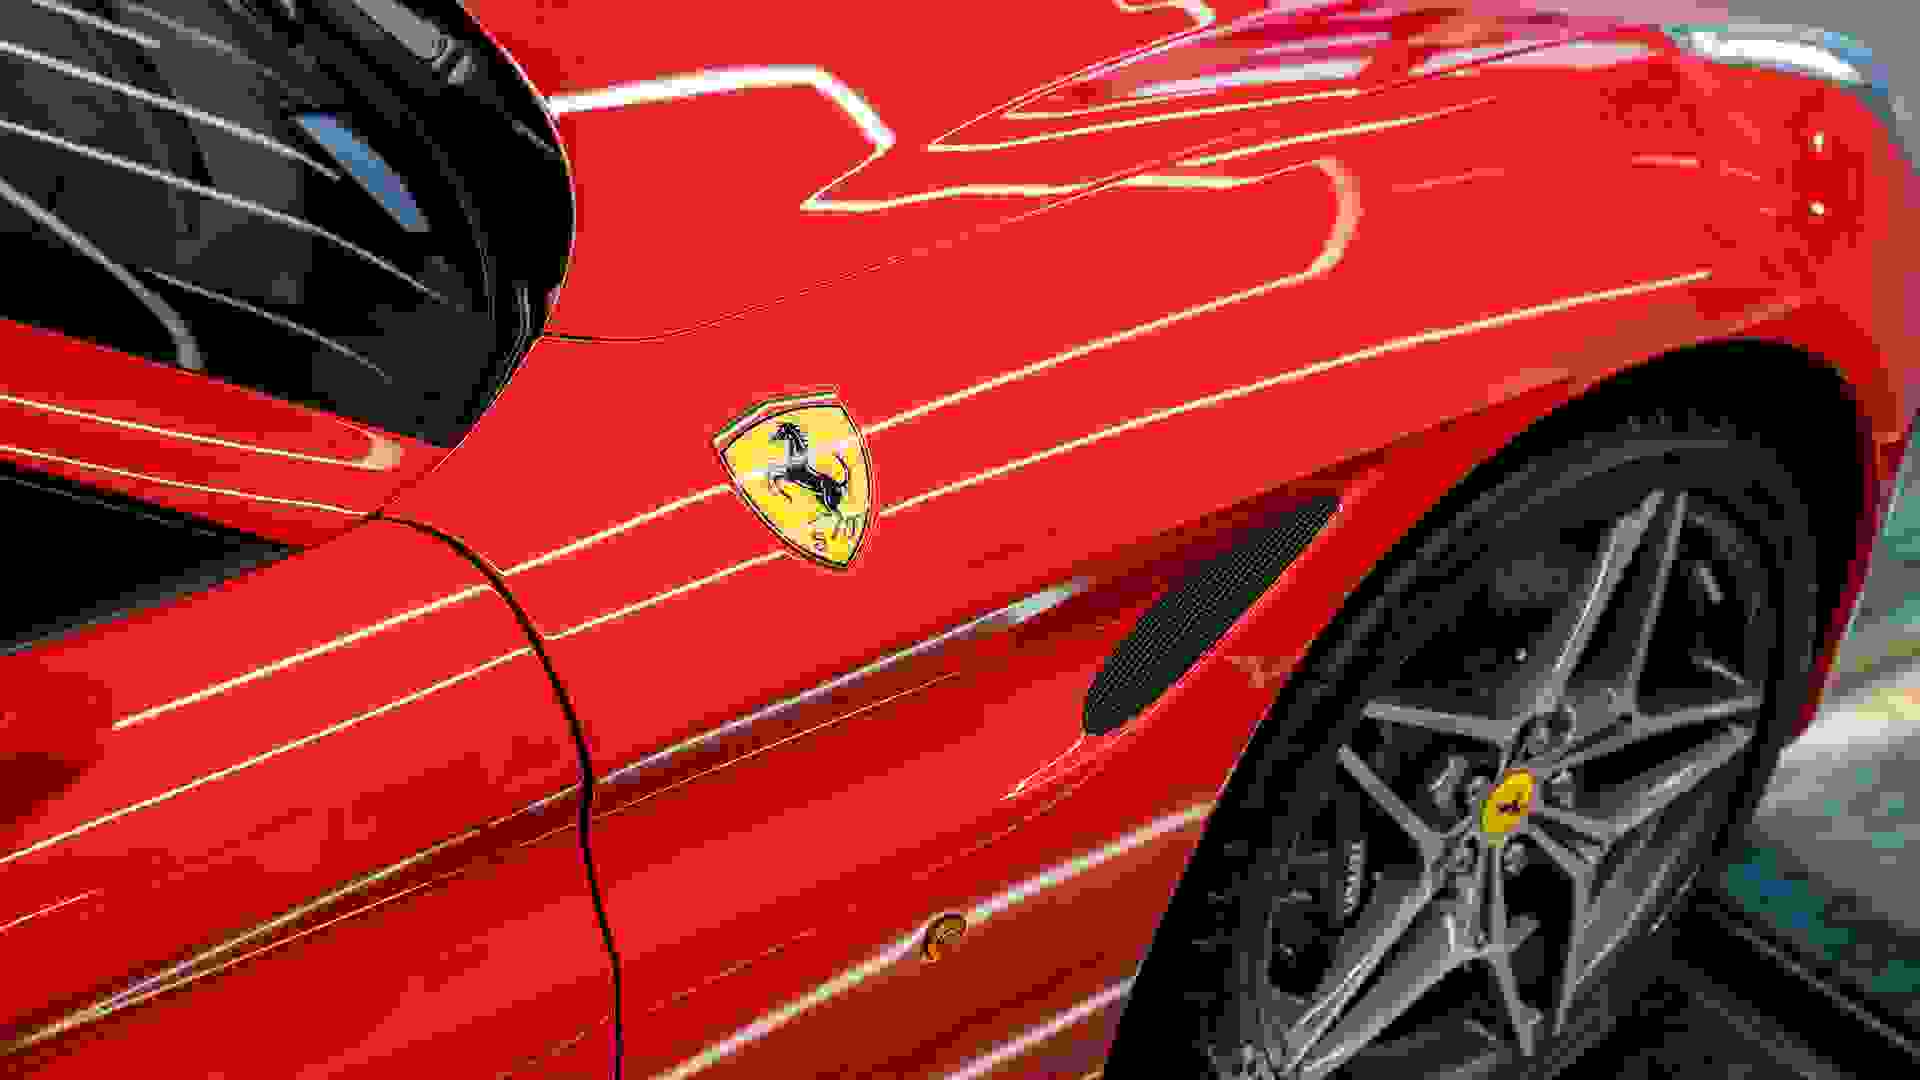 Ferrari California Photo 43917b04-32e0-40c3-a365-82e3c33733b1.jpg